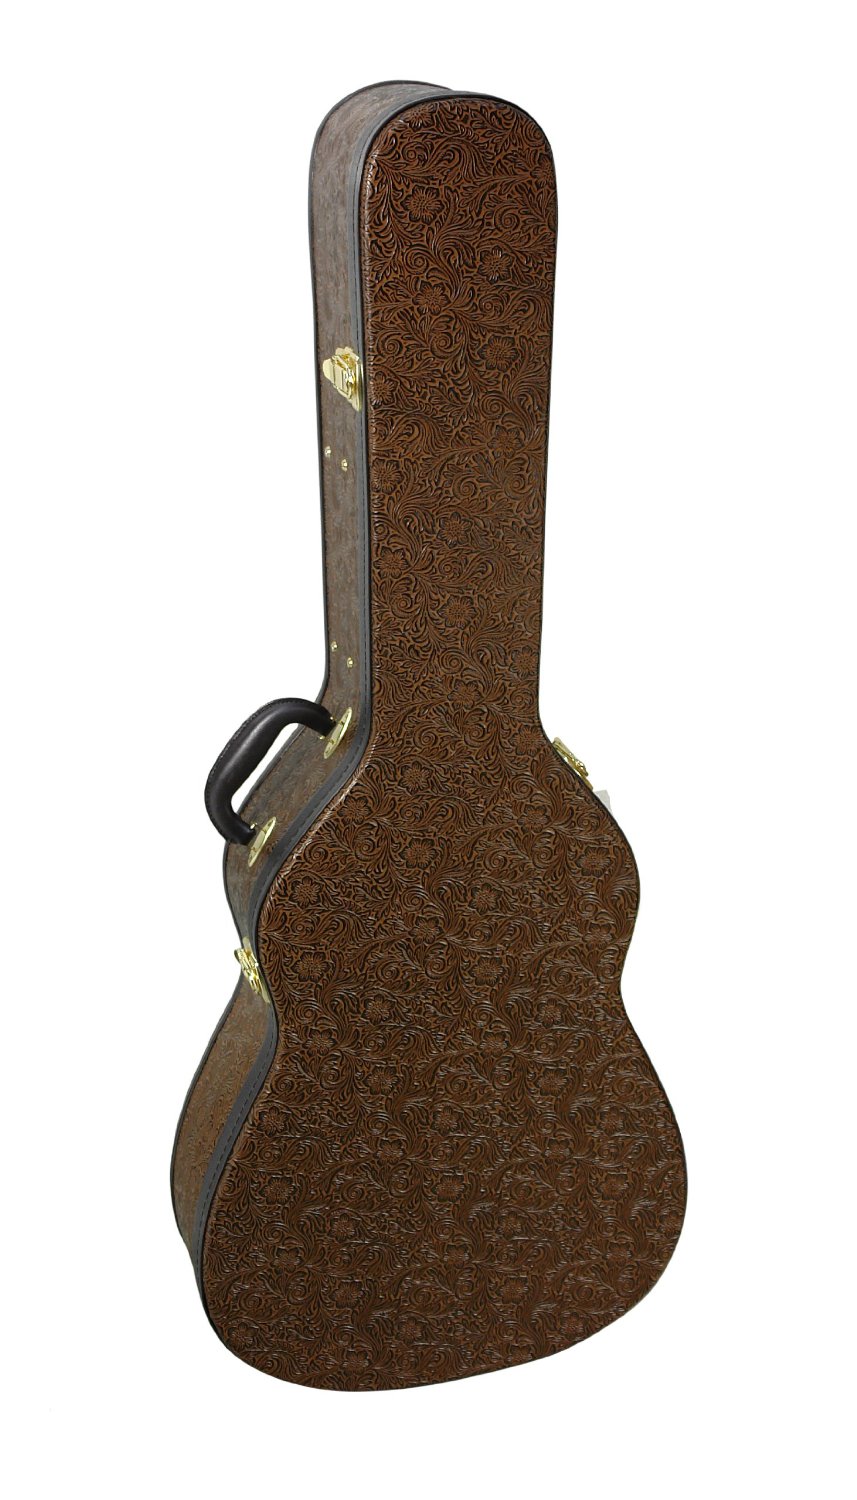 Luna VISTAEAGLE Acoustic/Electric Guitar, Tropical Wood